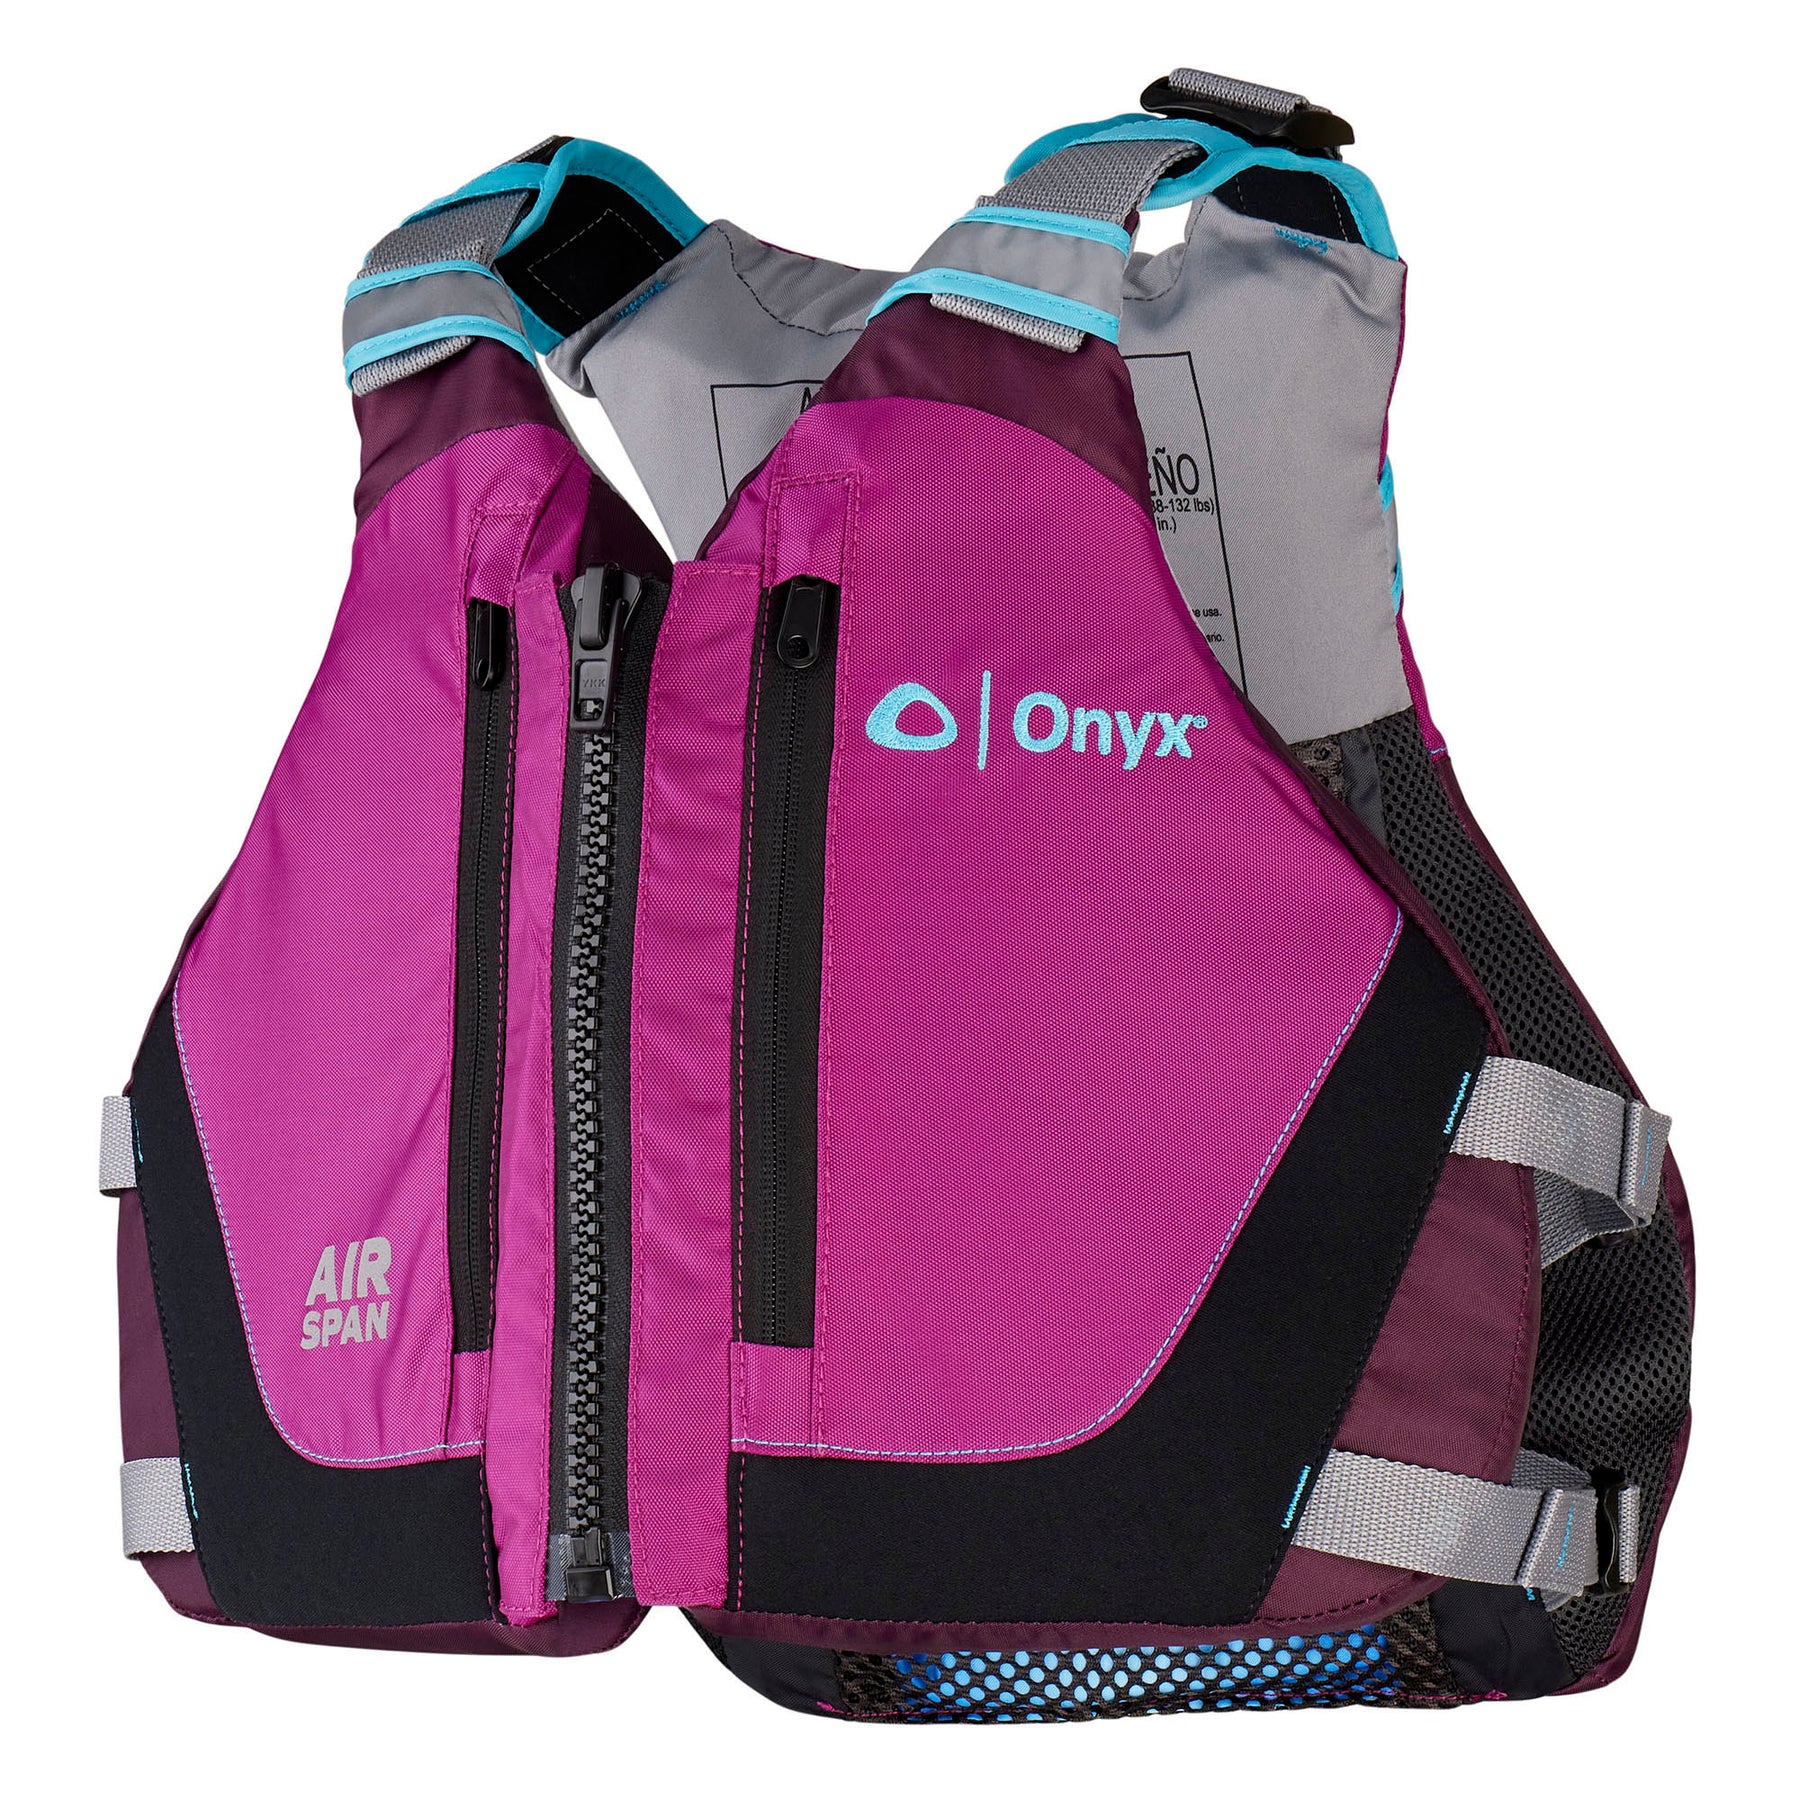 Onyx Airspan Breeze Life Jacket XSSM Blue 12300050002023